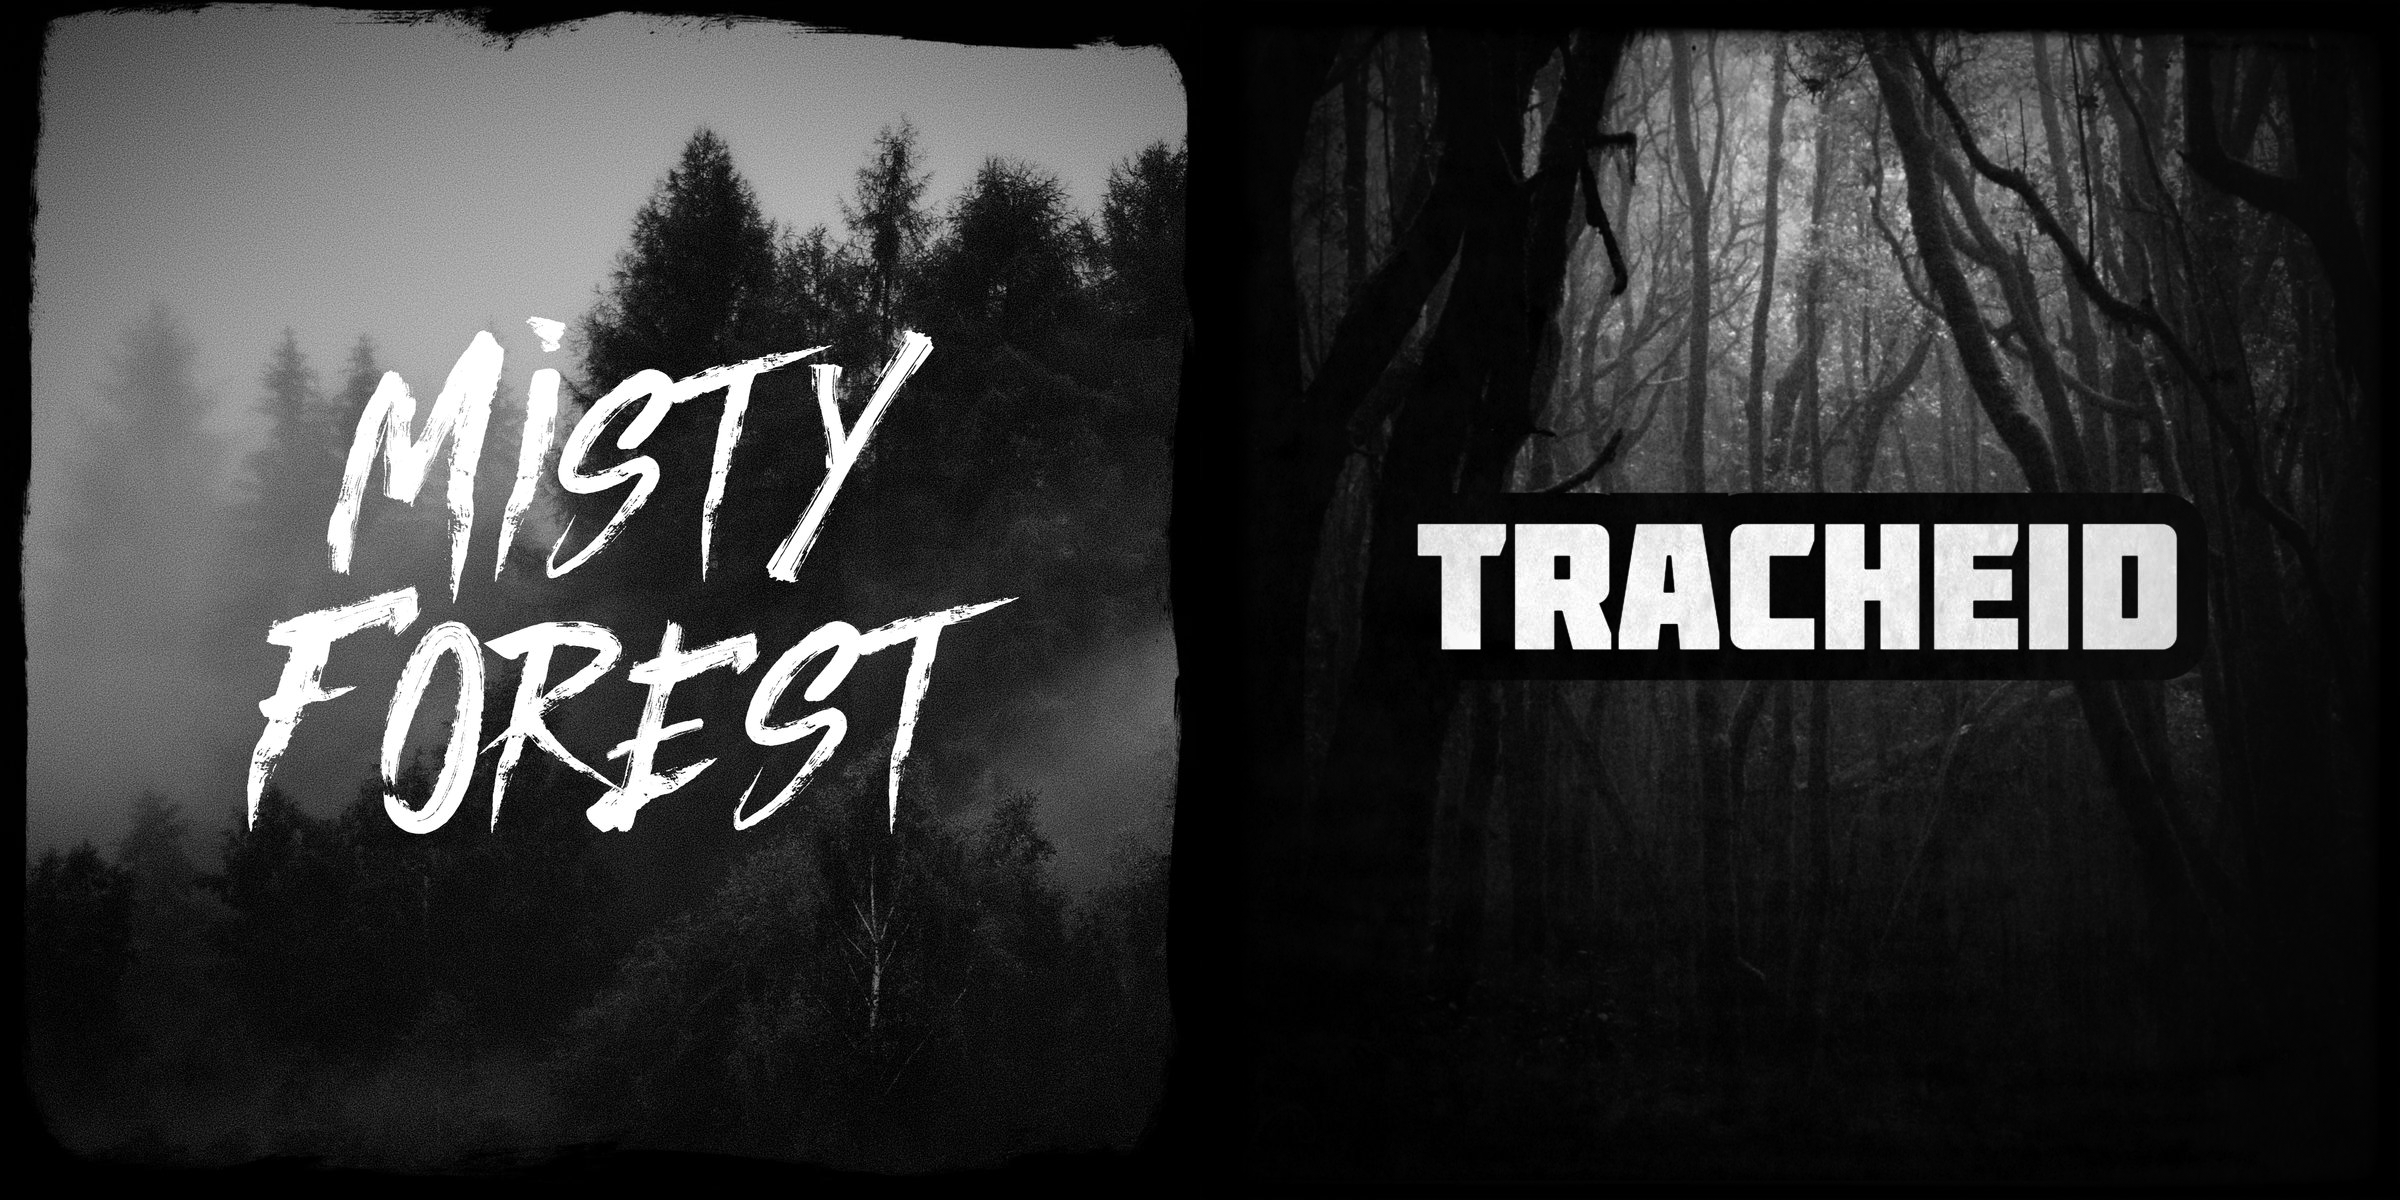 hudební skladby Misty Forest & Tracheid